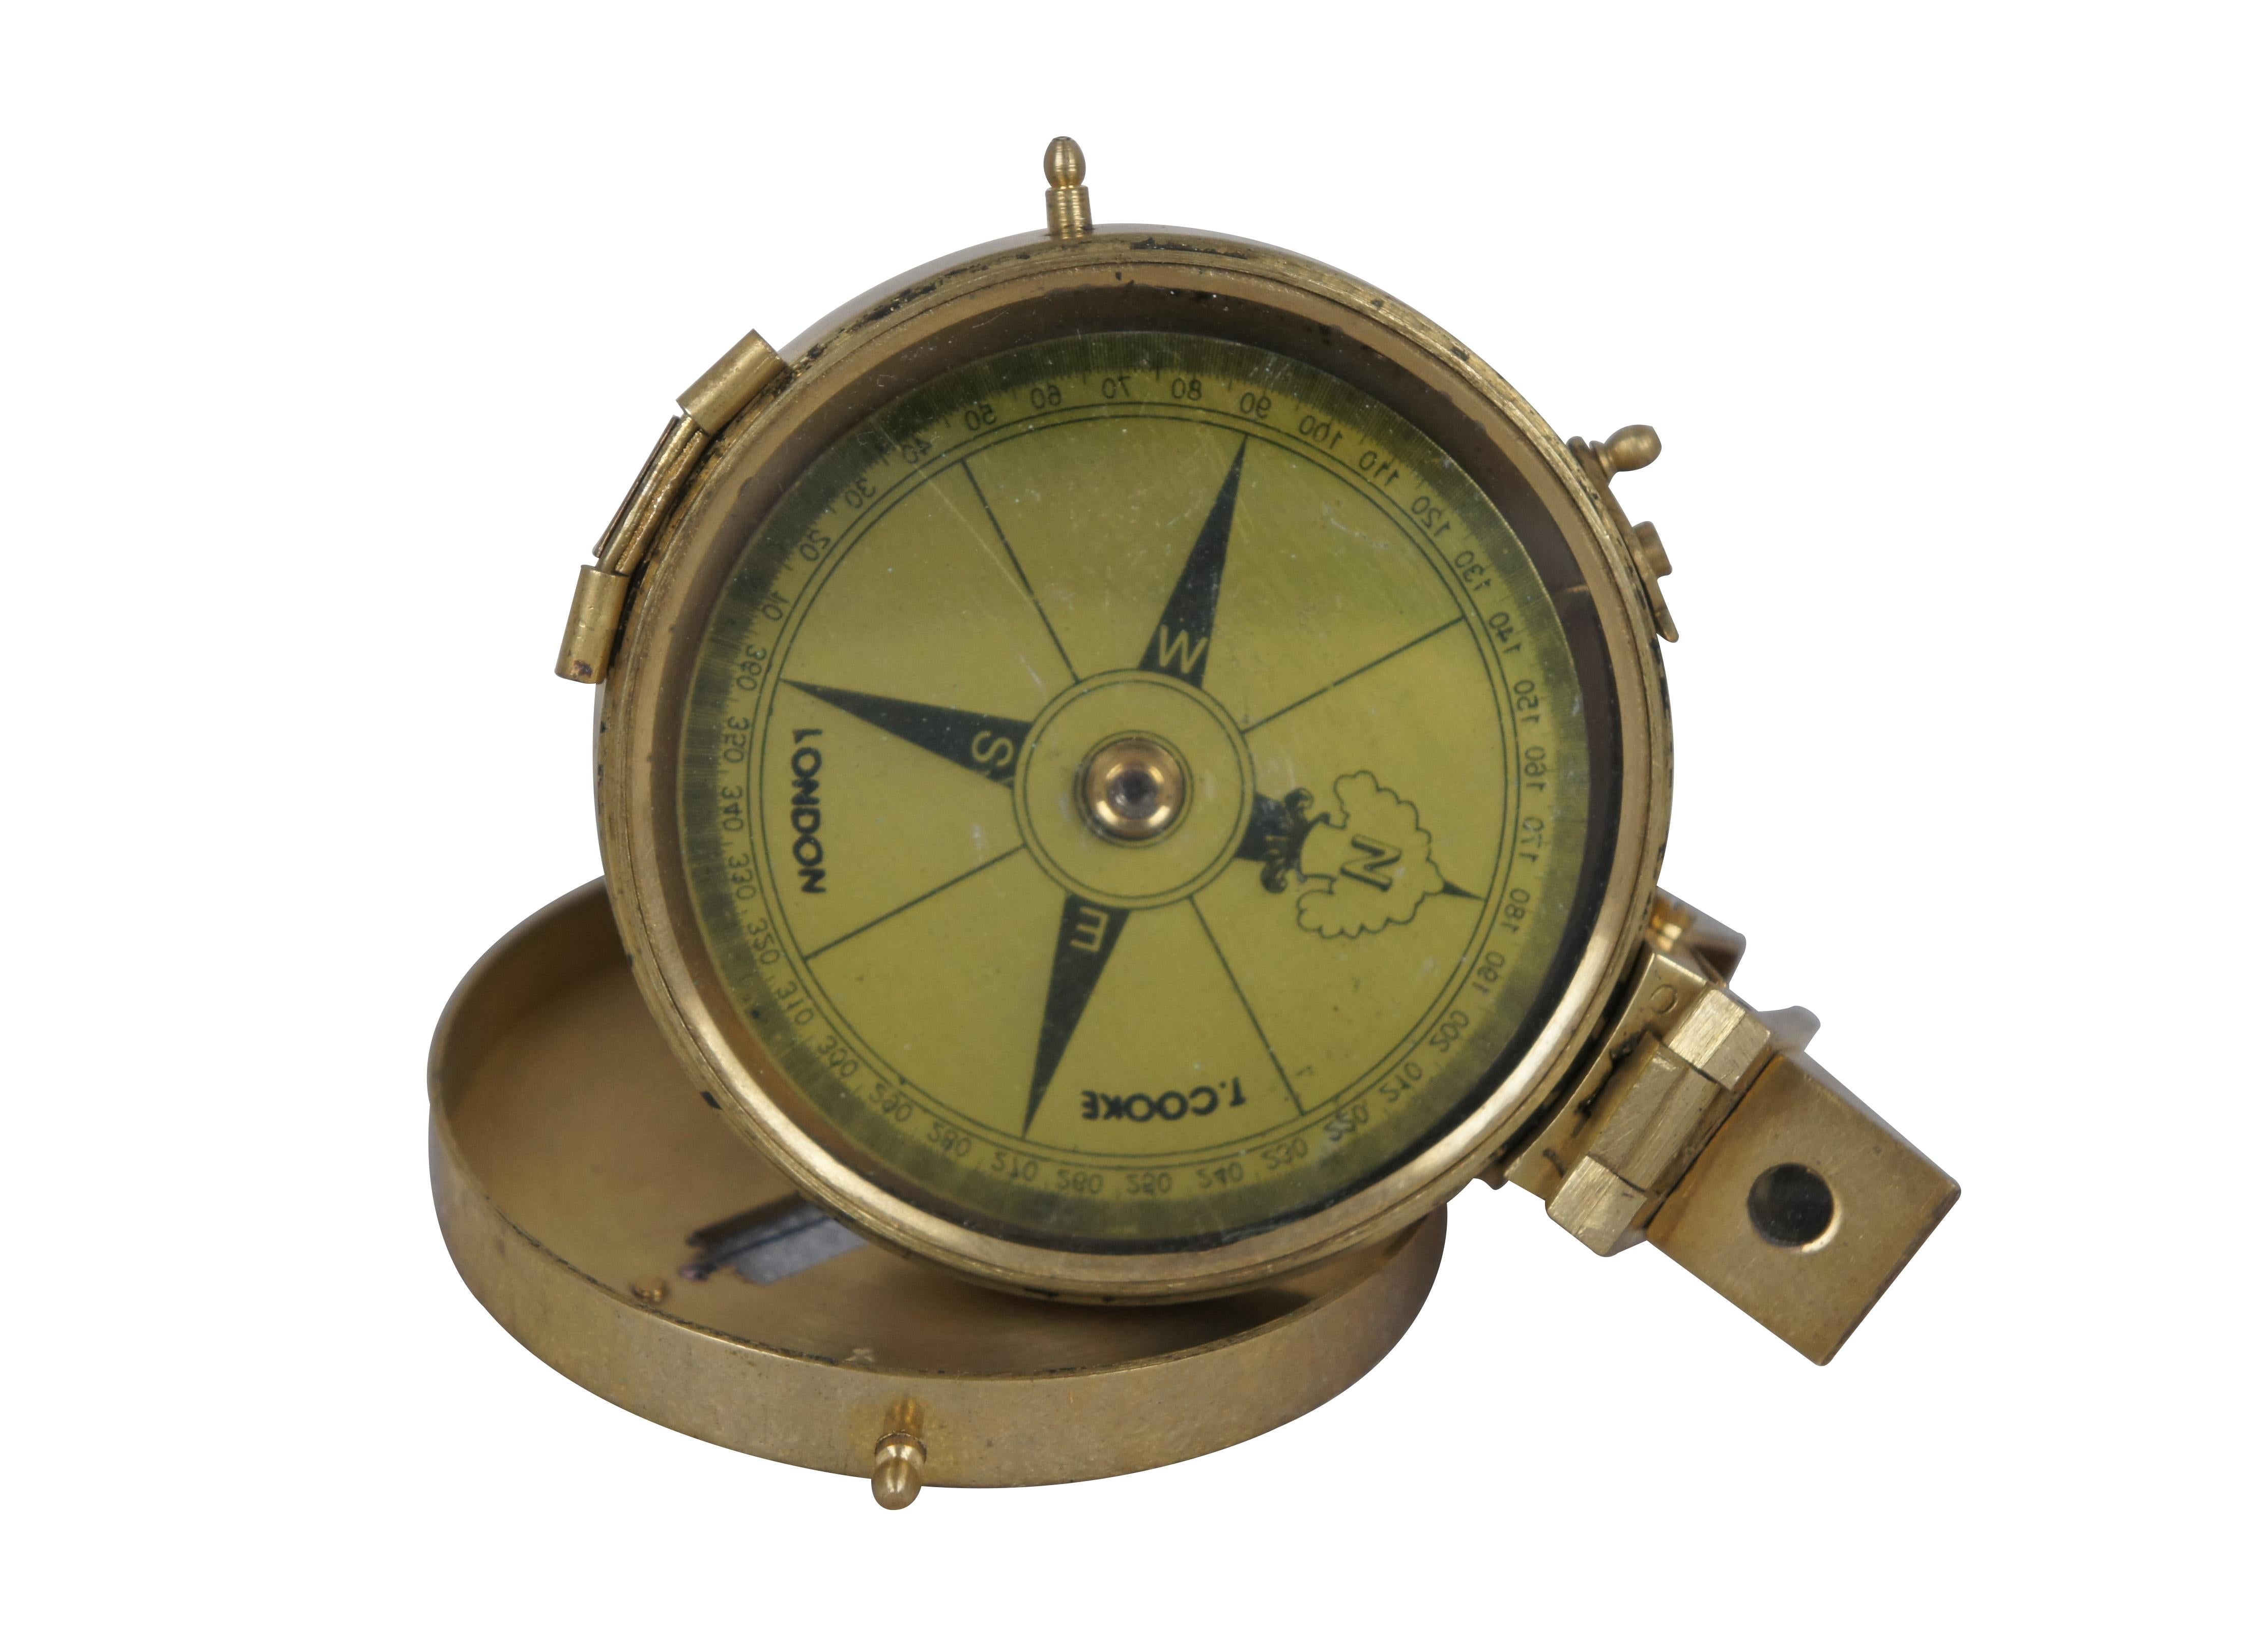 Vintage T. Cooke of London prismatischer Kompass. Messinggehäuse mit durchbrochener Visierlinie im Deckel, Faltprisma, goldfarbenes Zifferblatt und kurzer Ständer, der zur Stabilisierung auf ein Stativ geschraubt werden kann.

